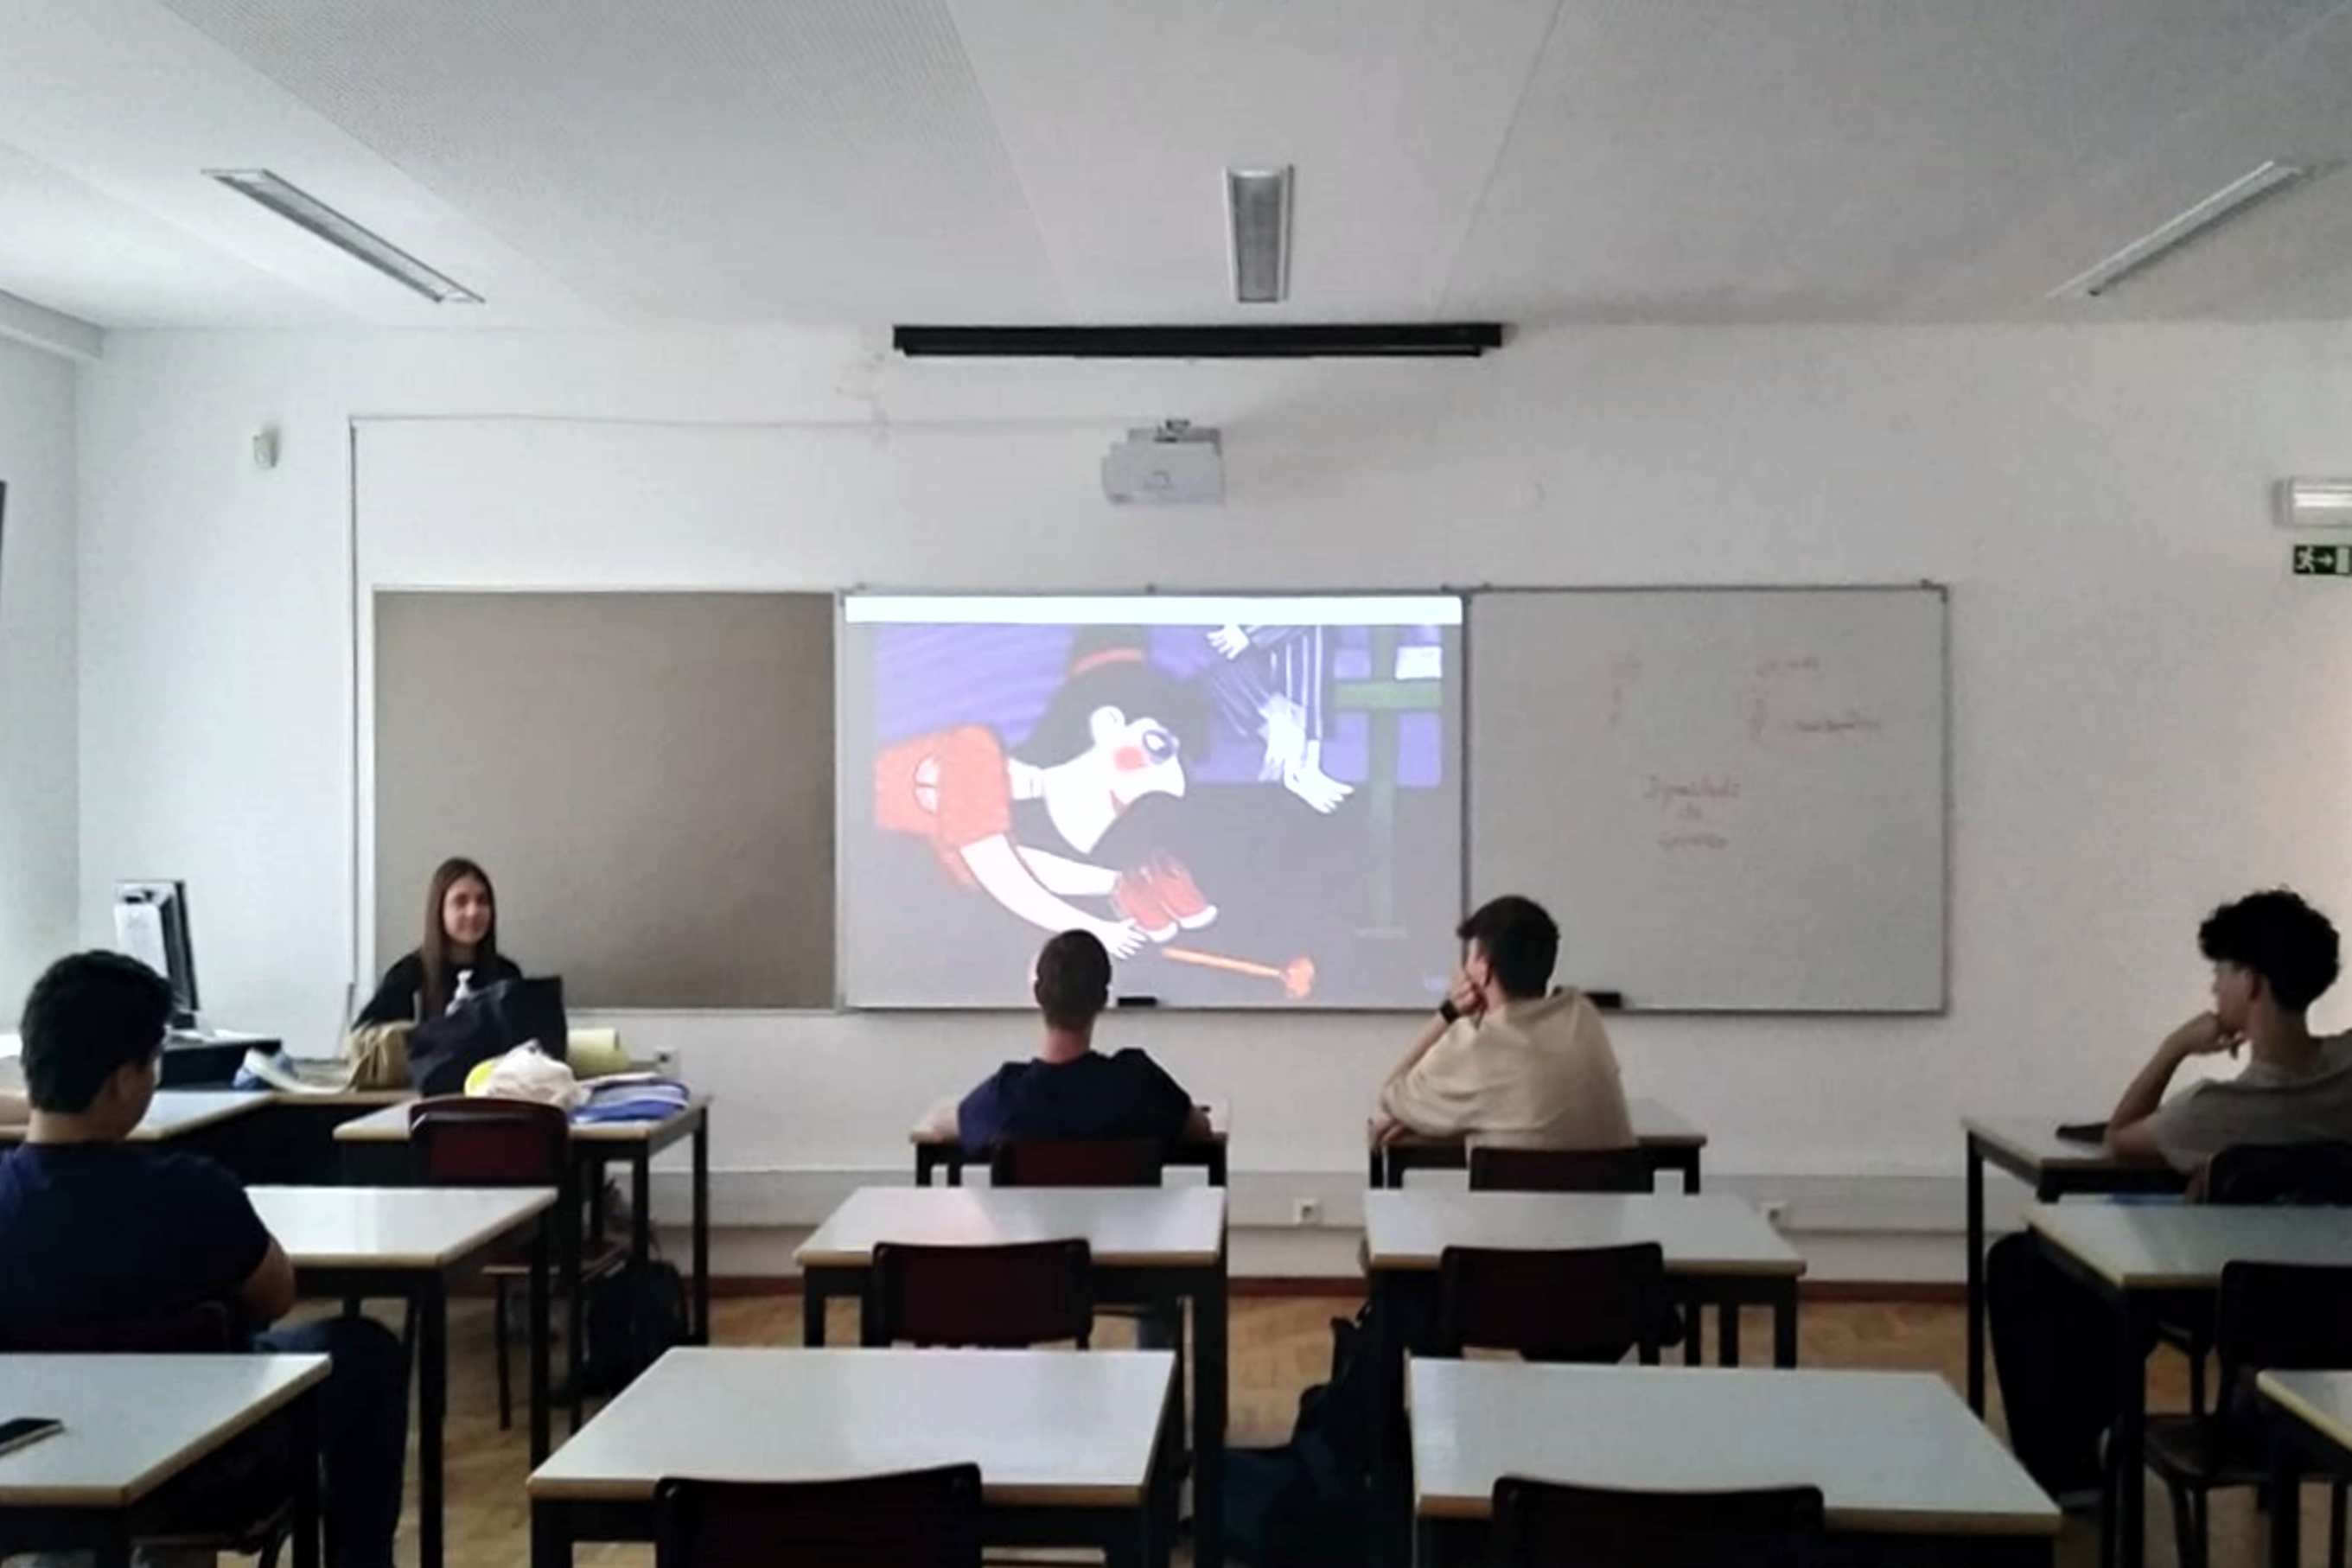 Jovens a assistirem ao vídeo sobre igualdade de género, com o apoio da jovem estagiária da Escola Secundária Severim de Faria.